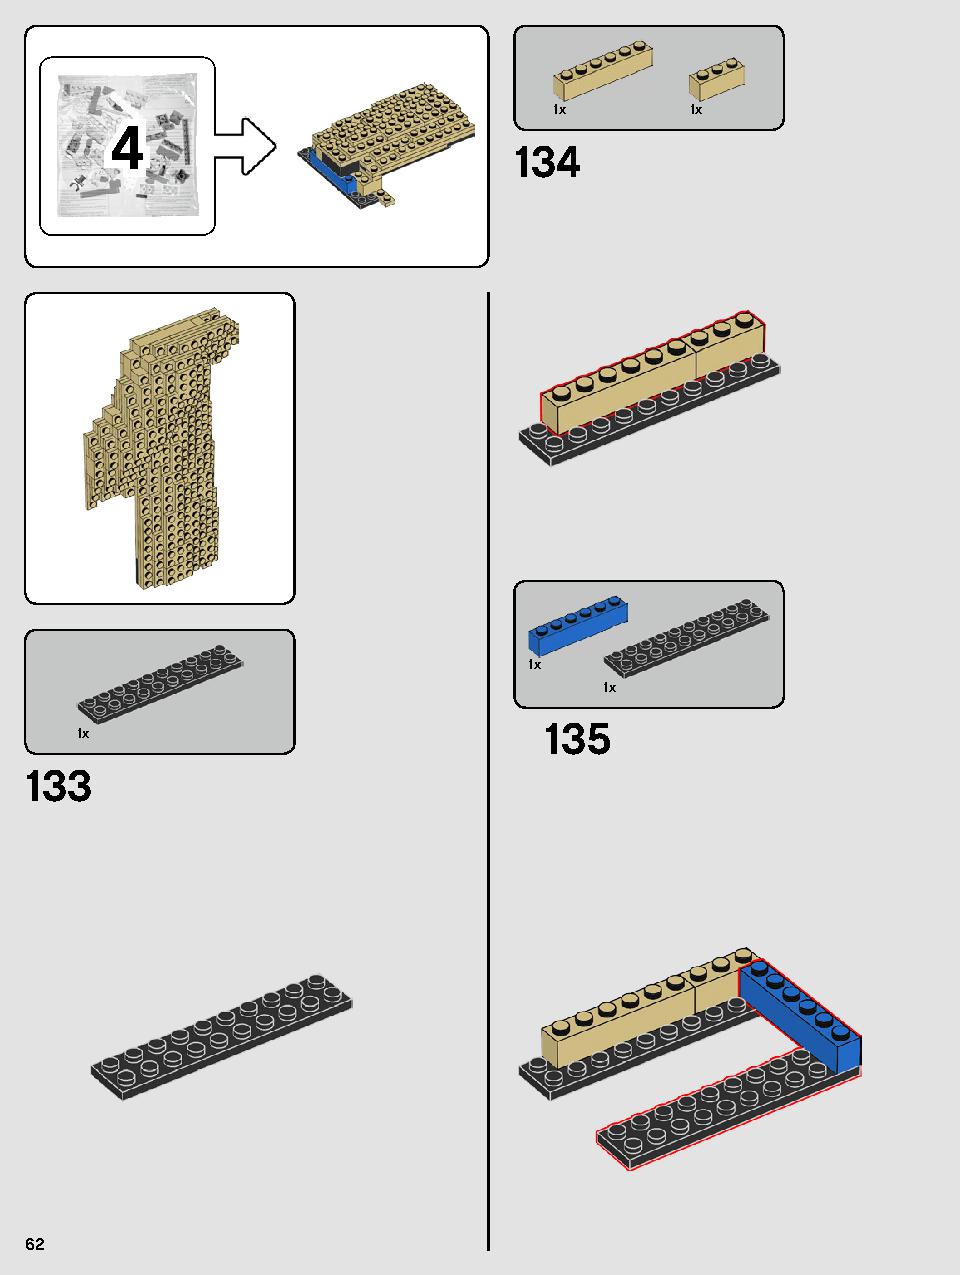 ヨーダ™ 75255 レゴの商品情報 レゴの説明書・組立方法 62 page